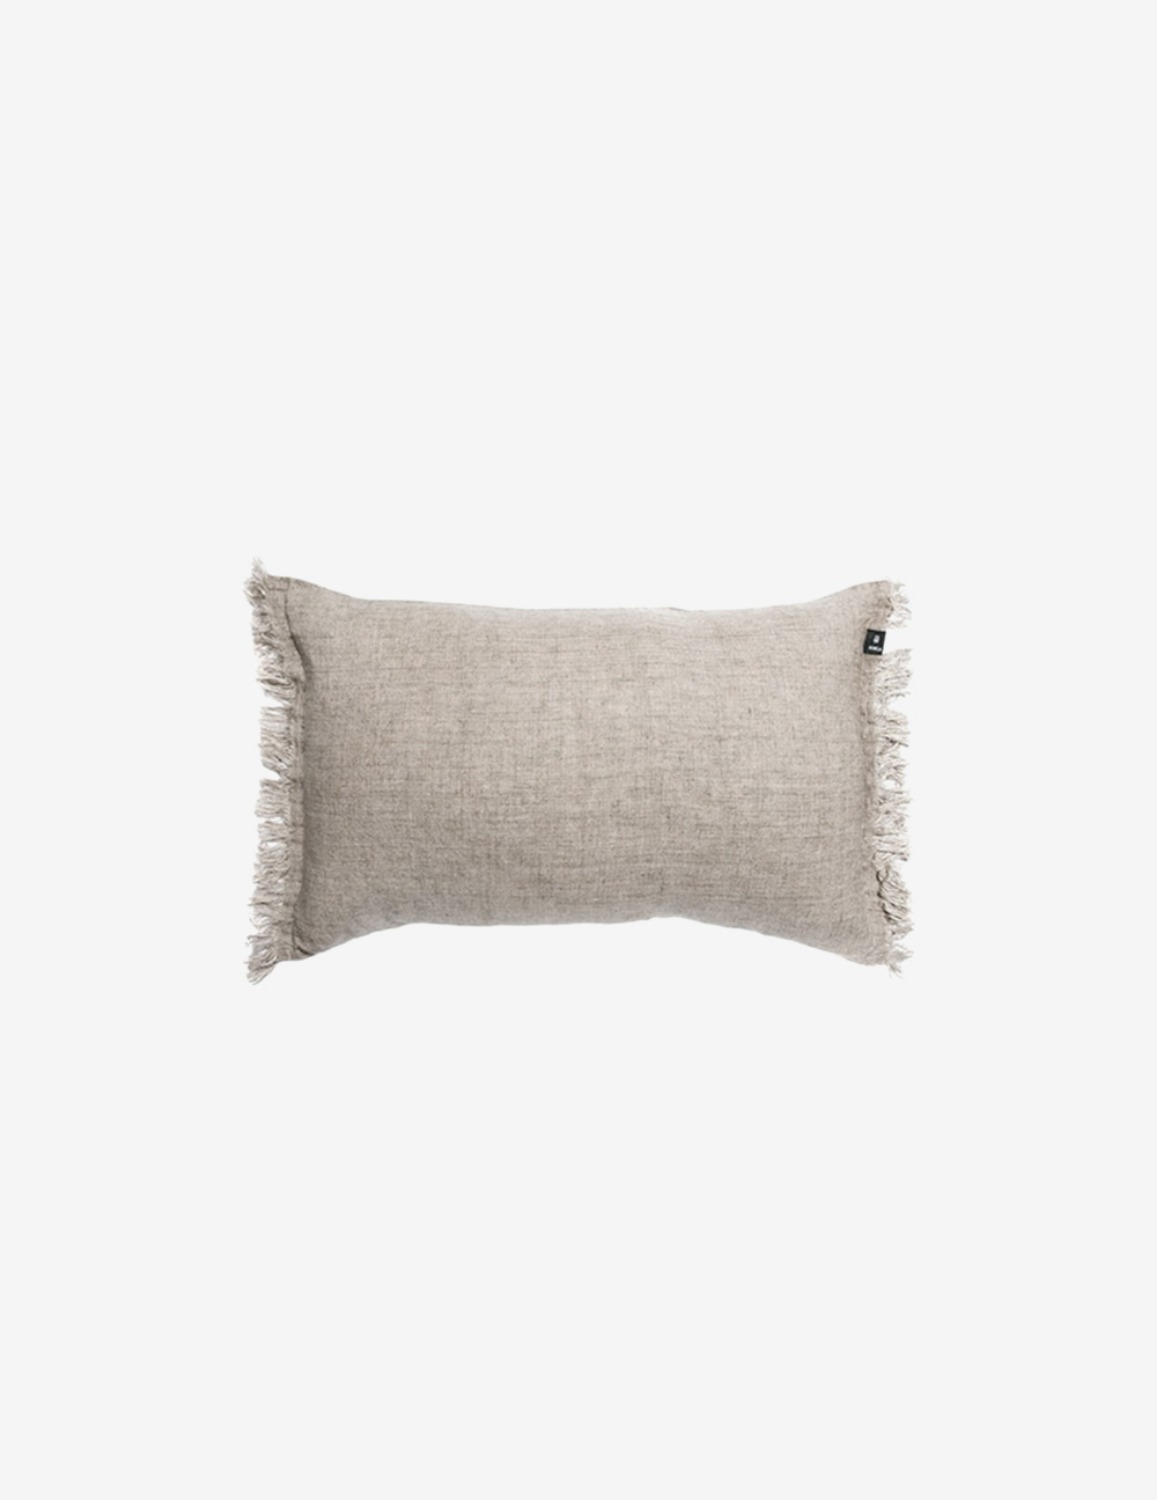 [HIMLA] Levelin Cushion / Natural (60x40)